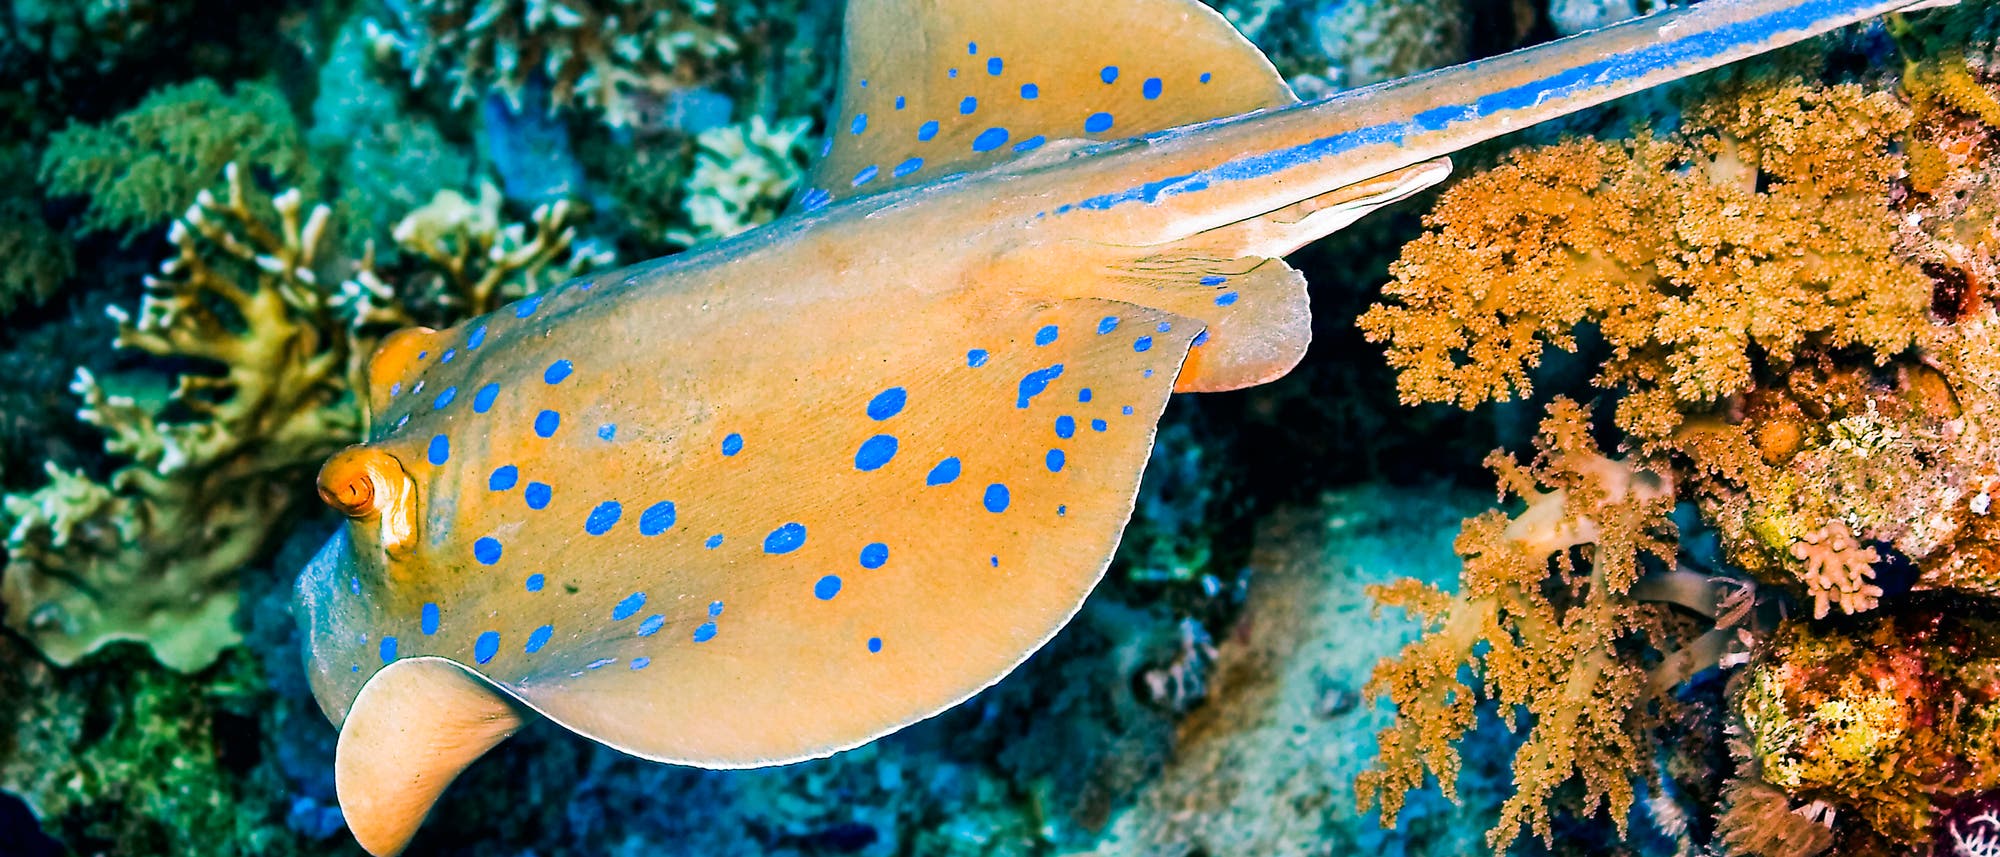 Der Blaupunktrochen ist ein Knorpelfisch mit zahlreichen strahlend blauen Punkten auf der grauen Haut. Hier schwimmt er durch ein Korallenriff, das vom Licht eines Fotografen beleuchtet wird.